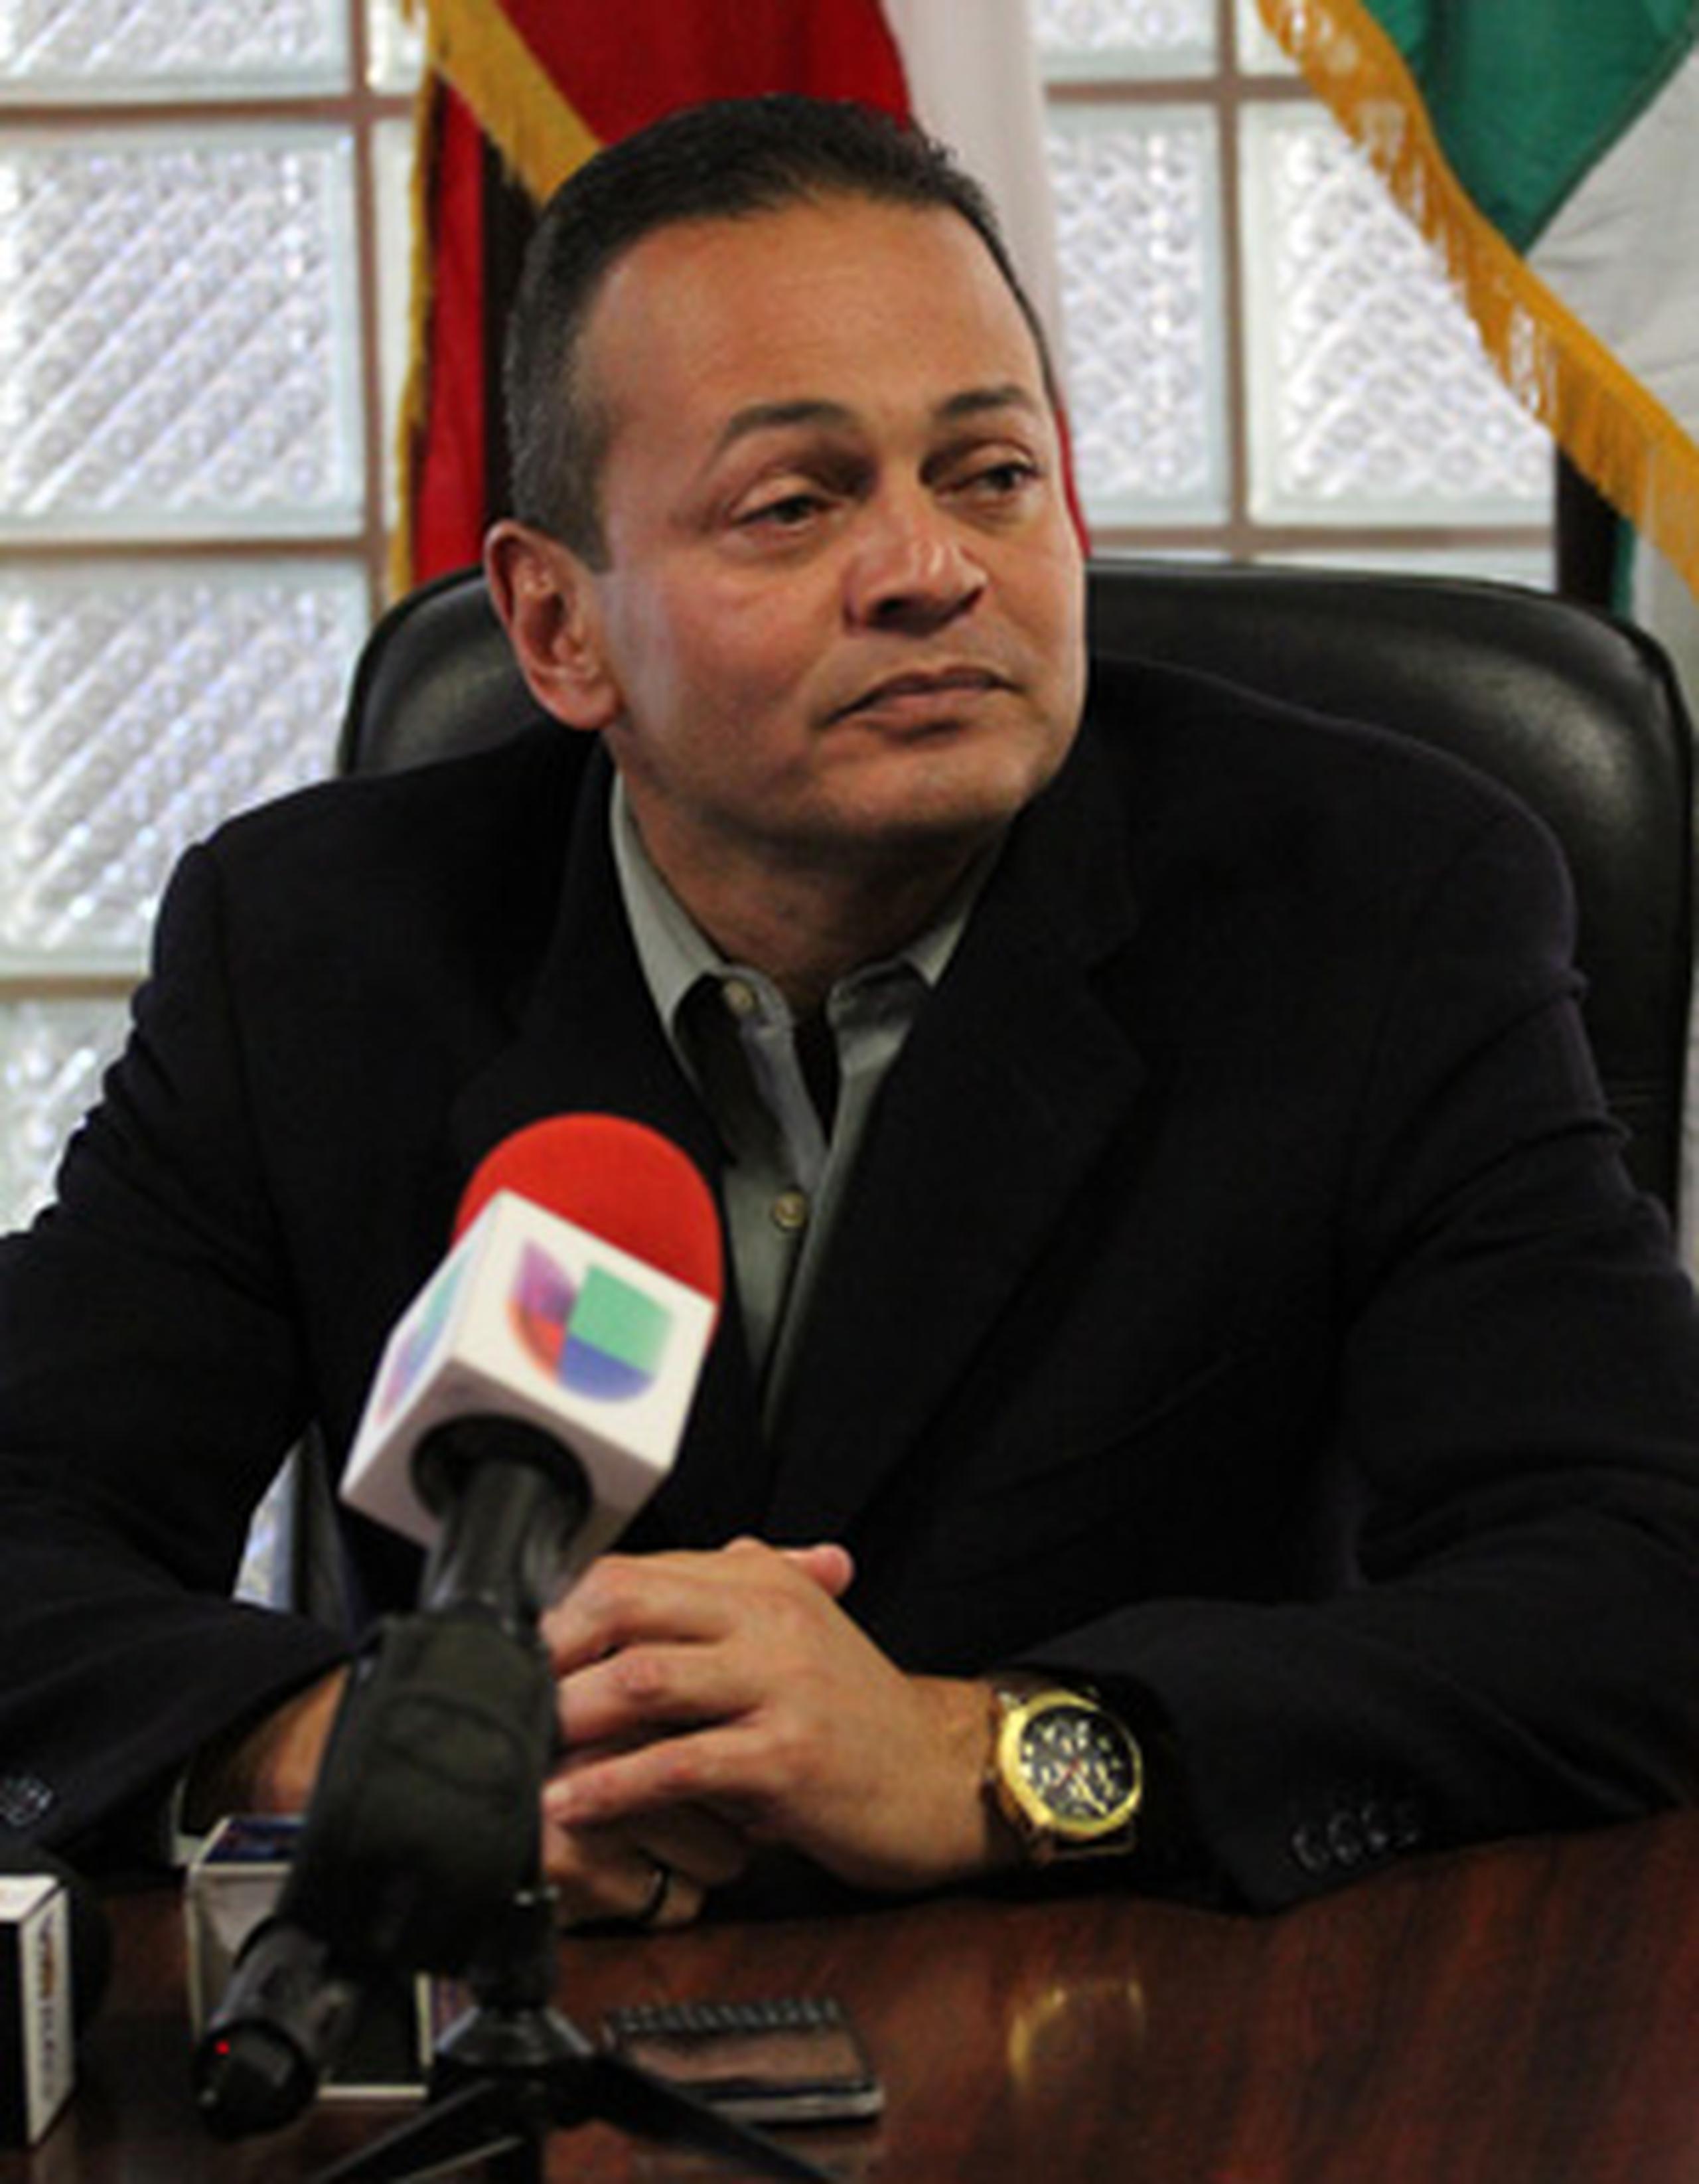 El alcalde de Añasco, Jorge Estévez Martínez, indicó que lo hablado durante el encuentro con los federales "es parte de una investigación”. (GFR Media/Olimpo Ramos)